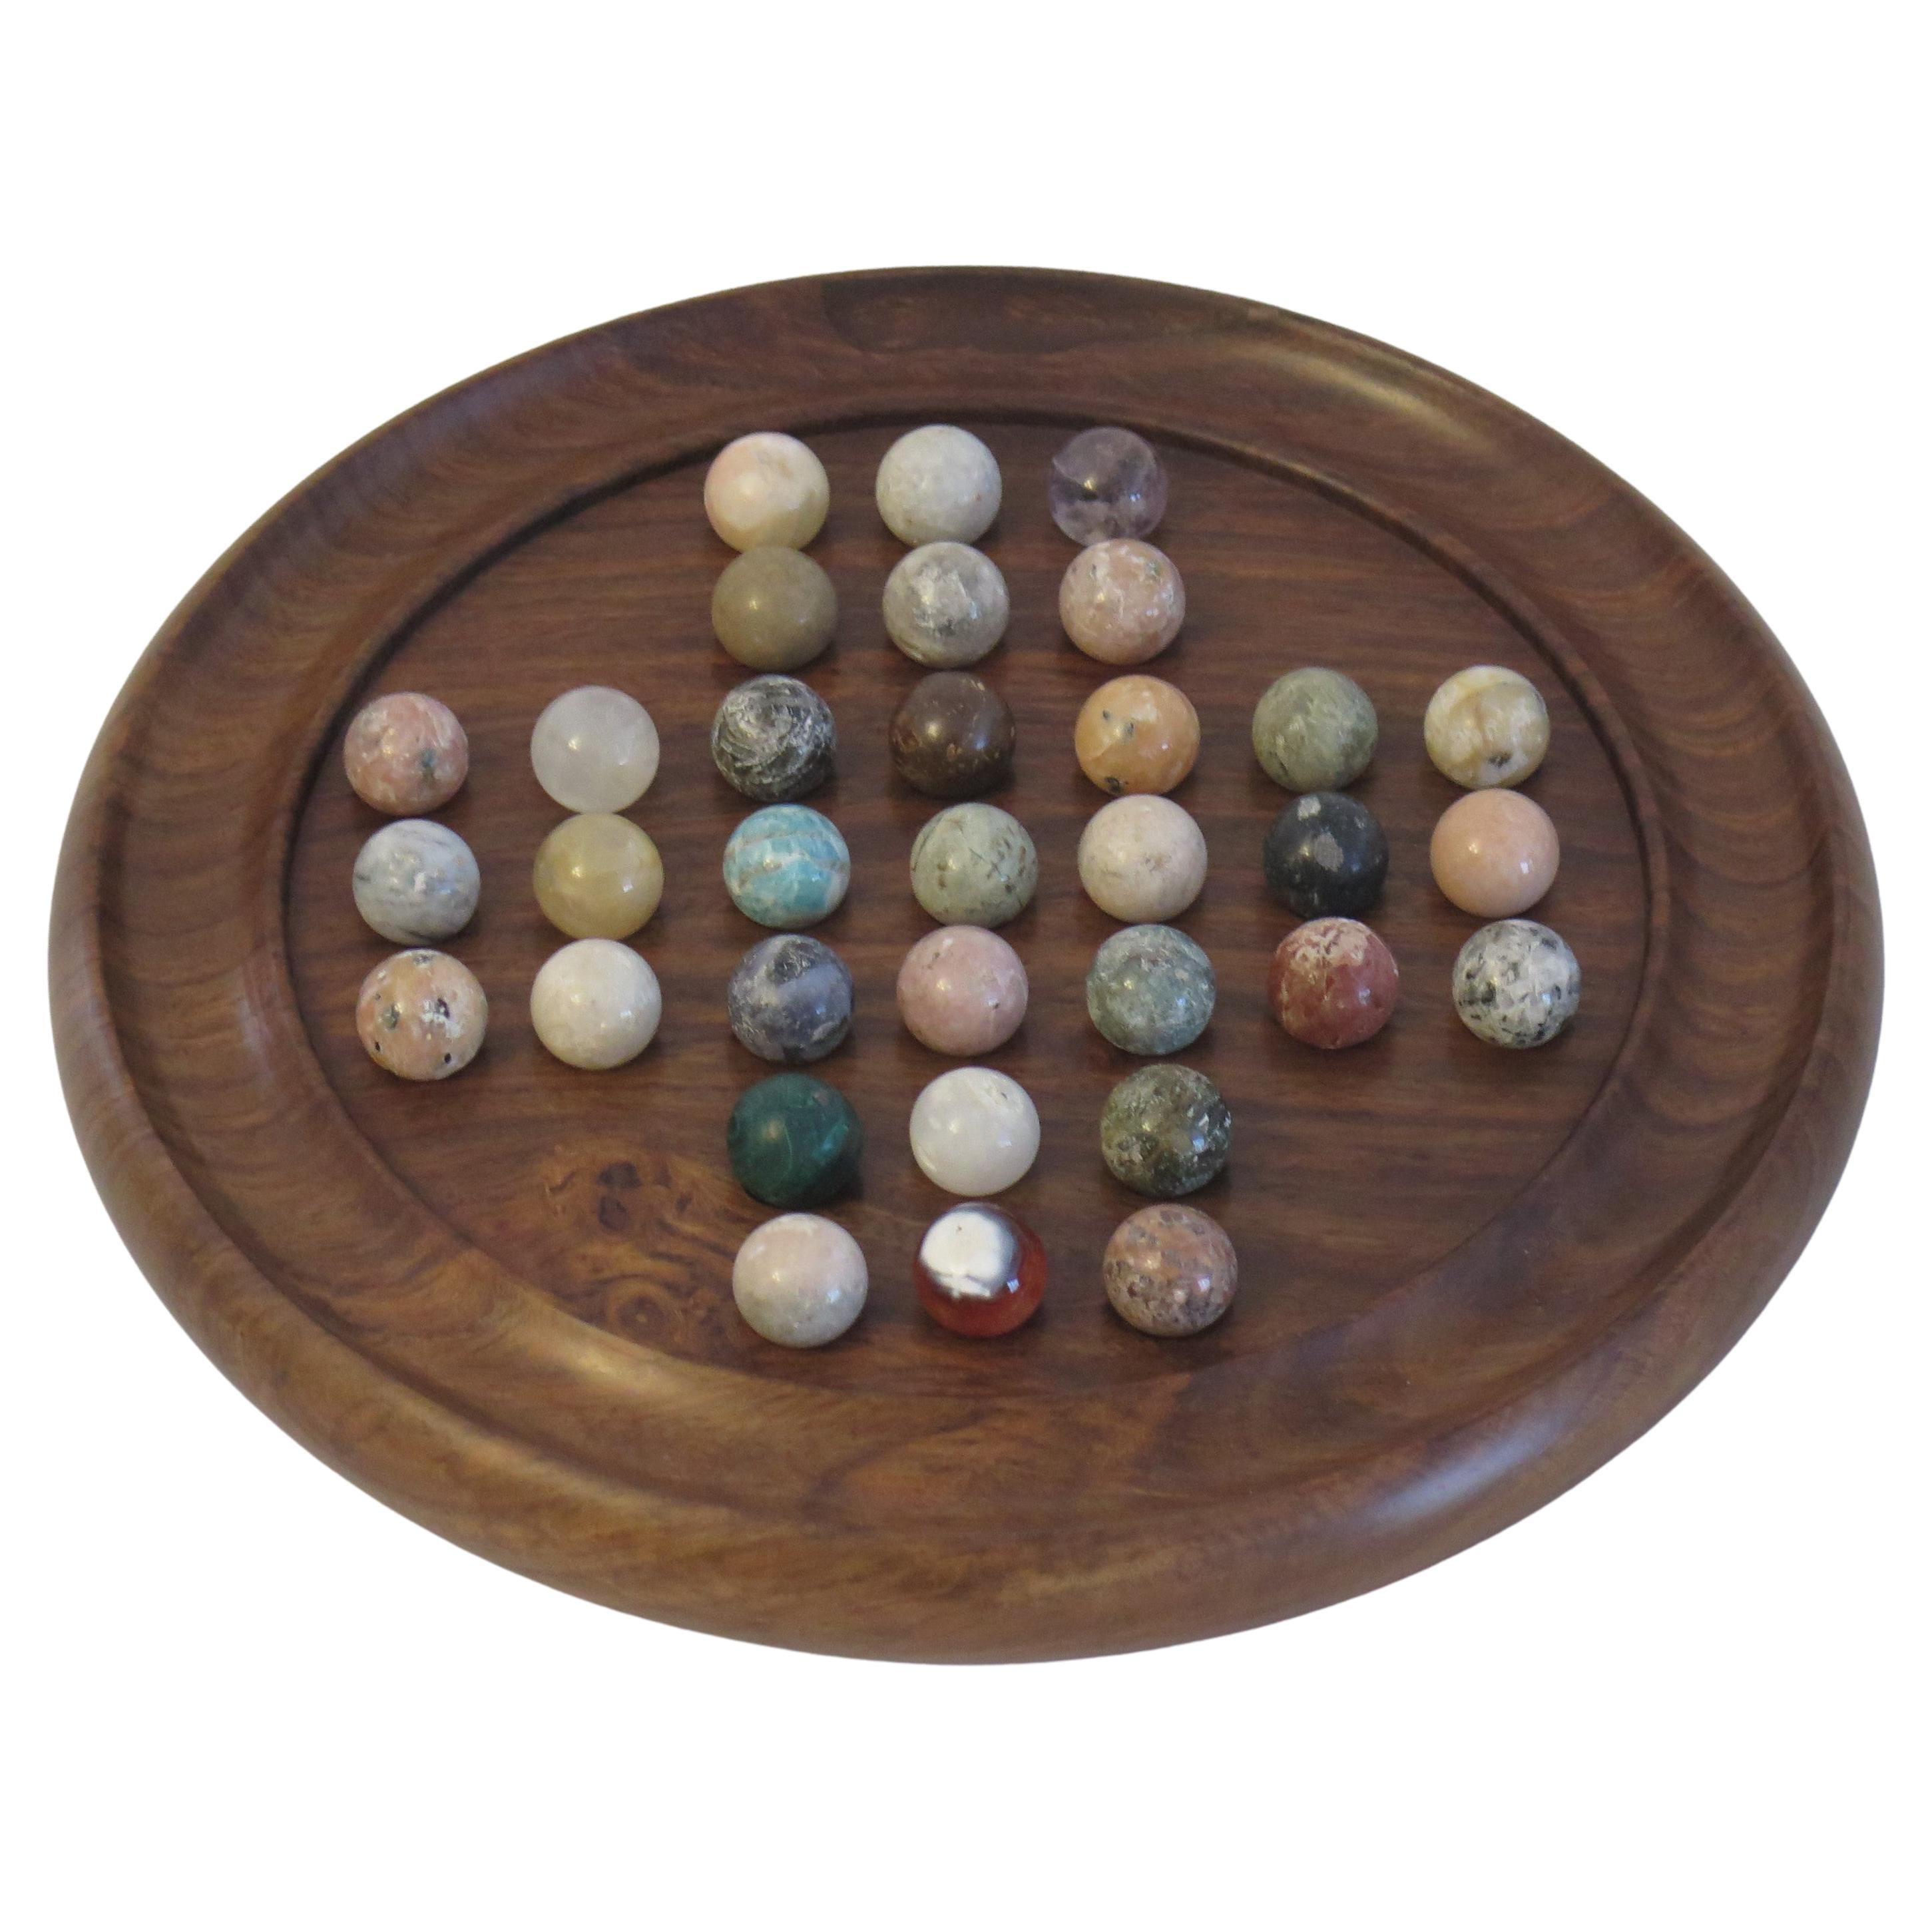 Jeux solitaire petit format en bois de thuya avec billes en marbre